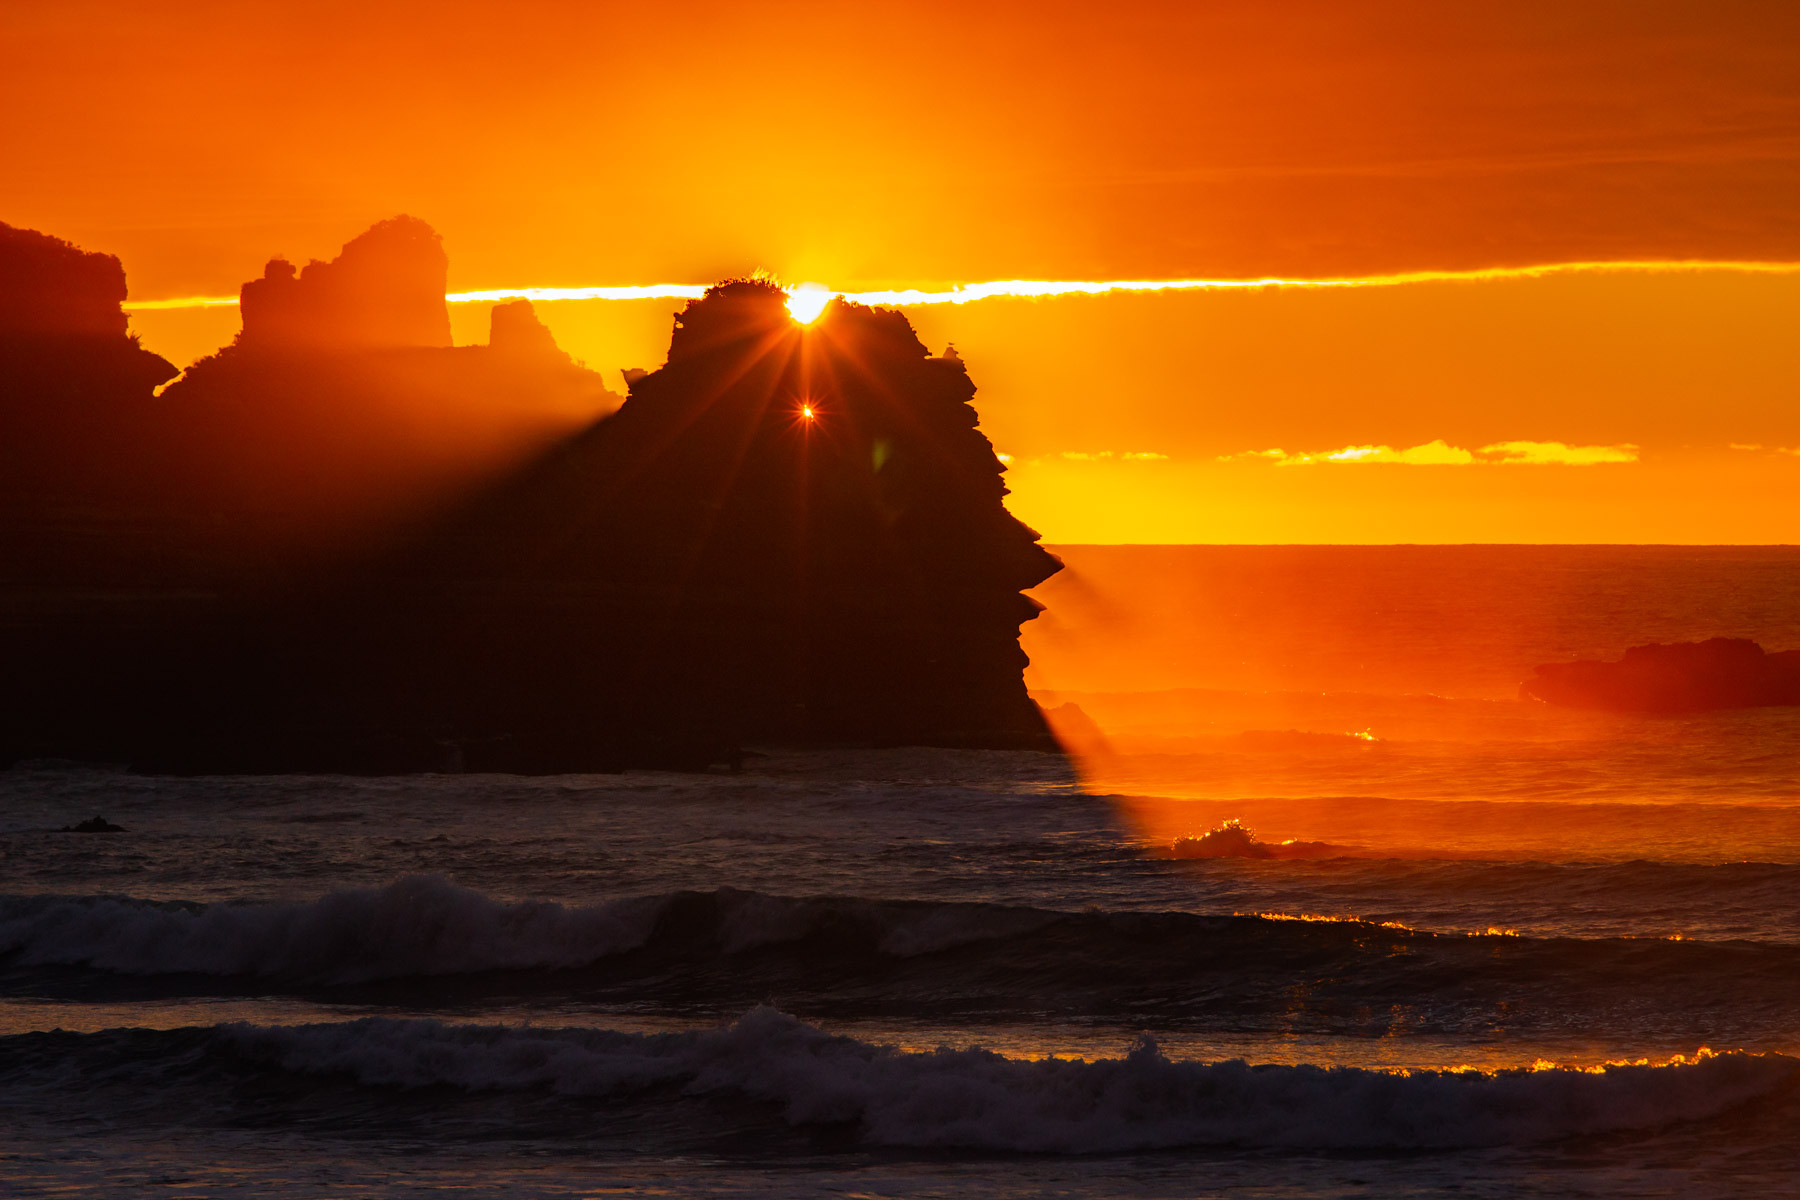 En fin de journée, les rayons du soleil pénètrent dans les trous d’une falaise située au bord d’une mer agitée.